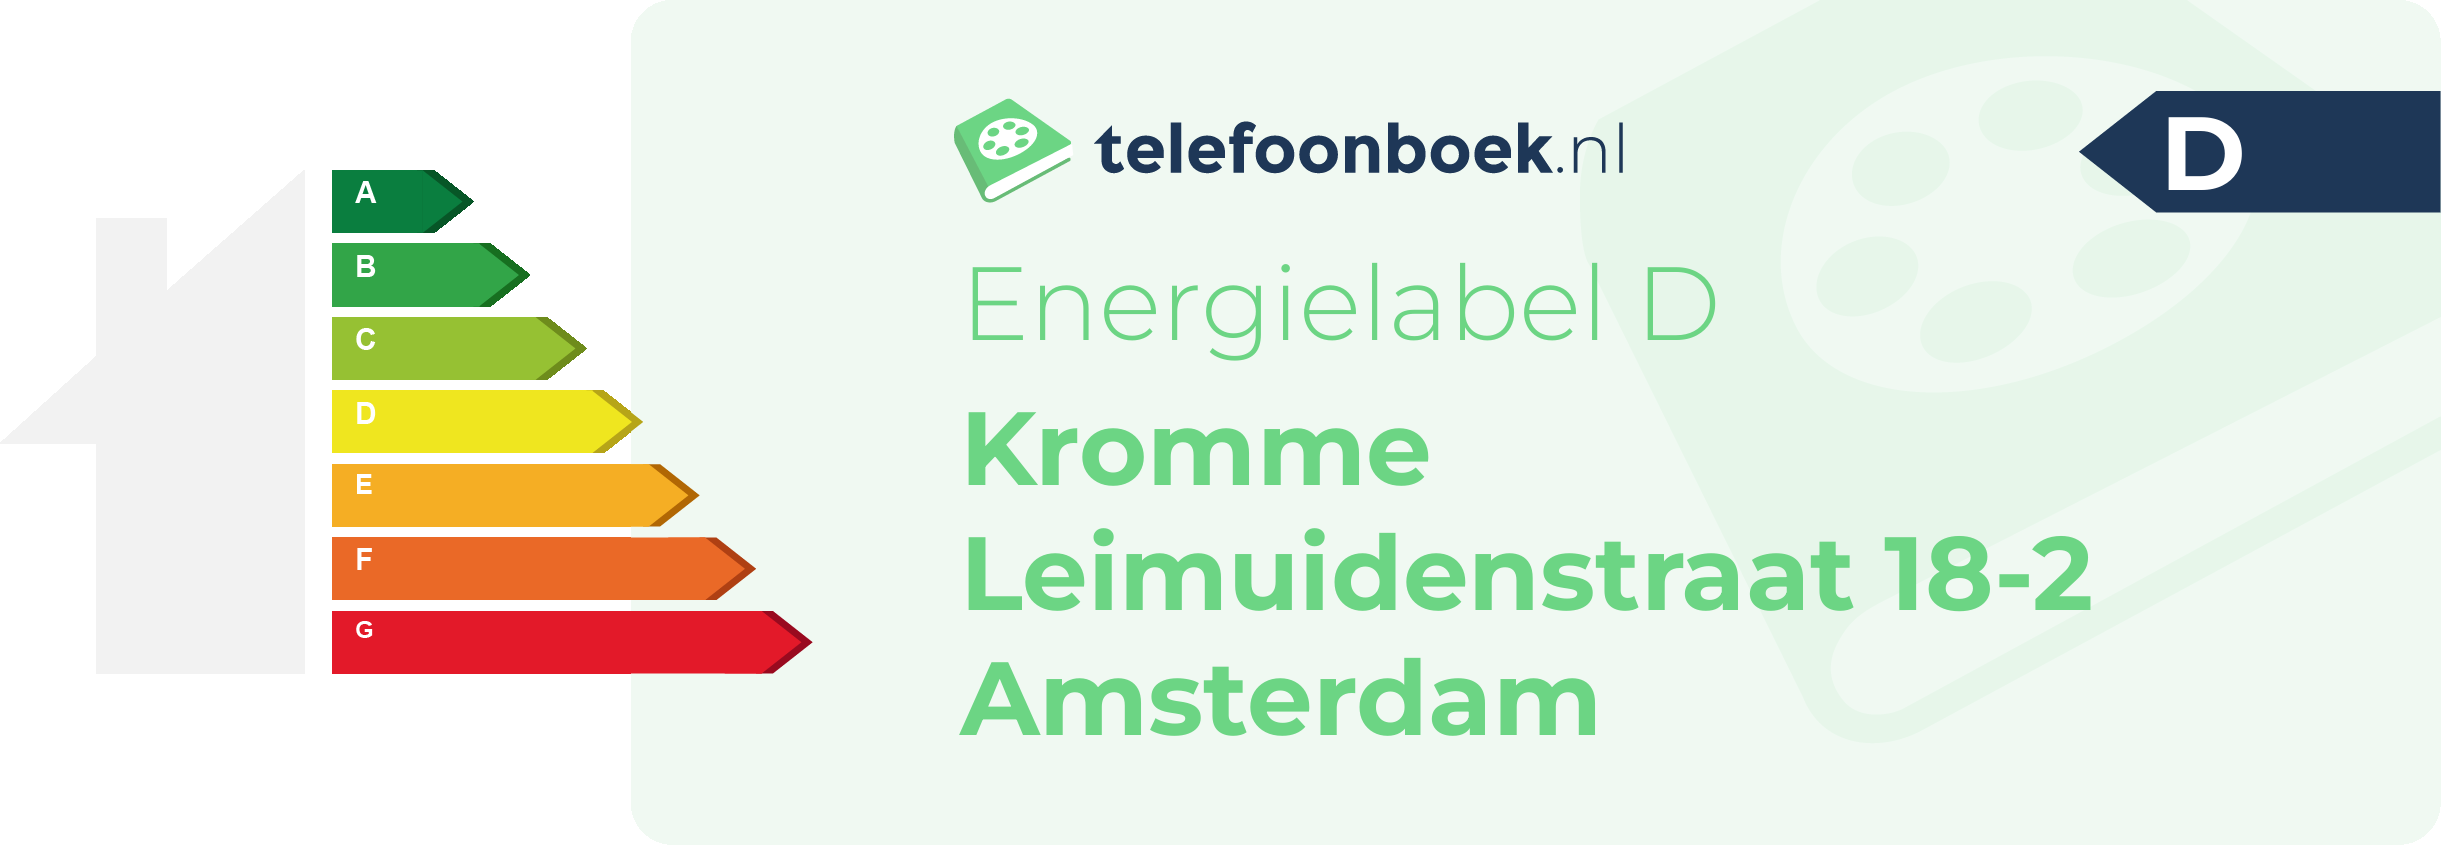 Energielabel Kromme Leimuidenstraat 18-2 Amsterdam